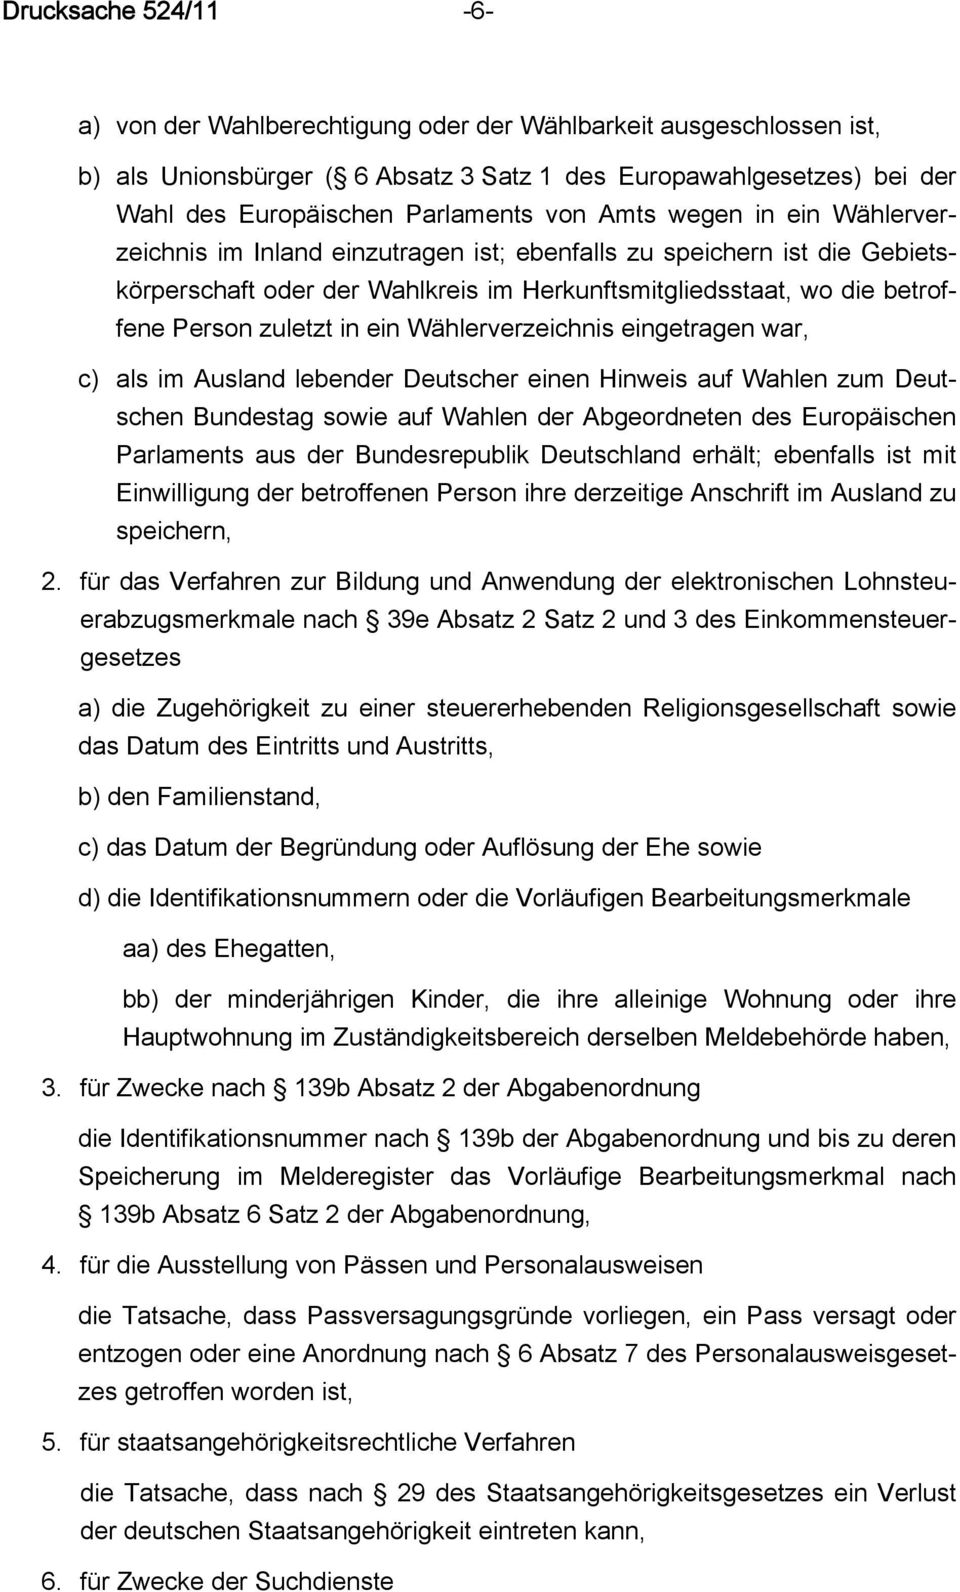 ein Wählerverzeichnis eingetragen war, c) als im Ausland lebender Deutscher einen Hinweis auf Wahlen zum Deutschen Bundestag sowie auf Wahlen der Abgeordneten des Europäischen Parlaments aus der